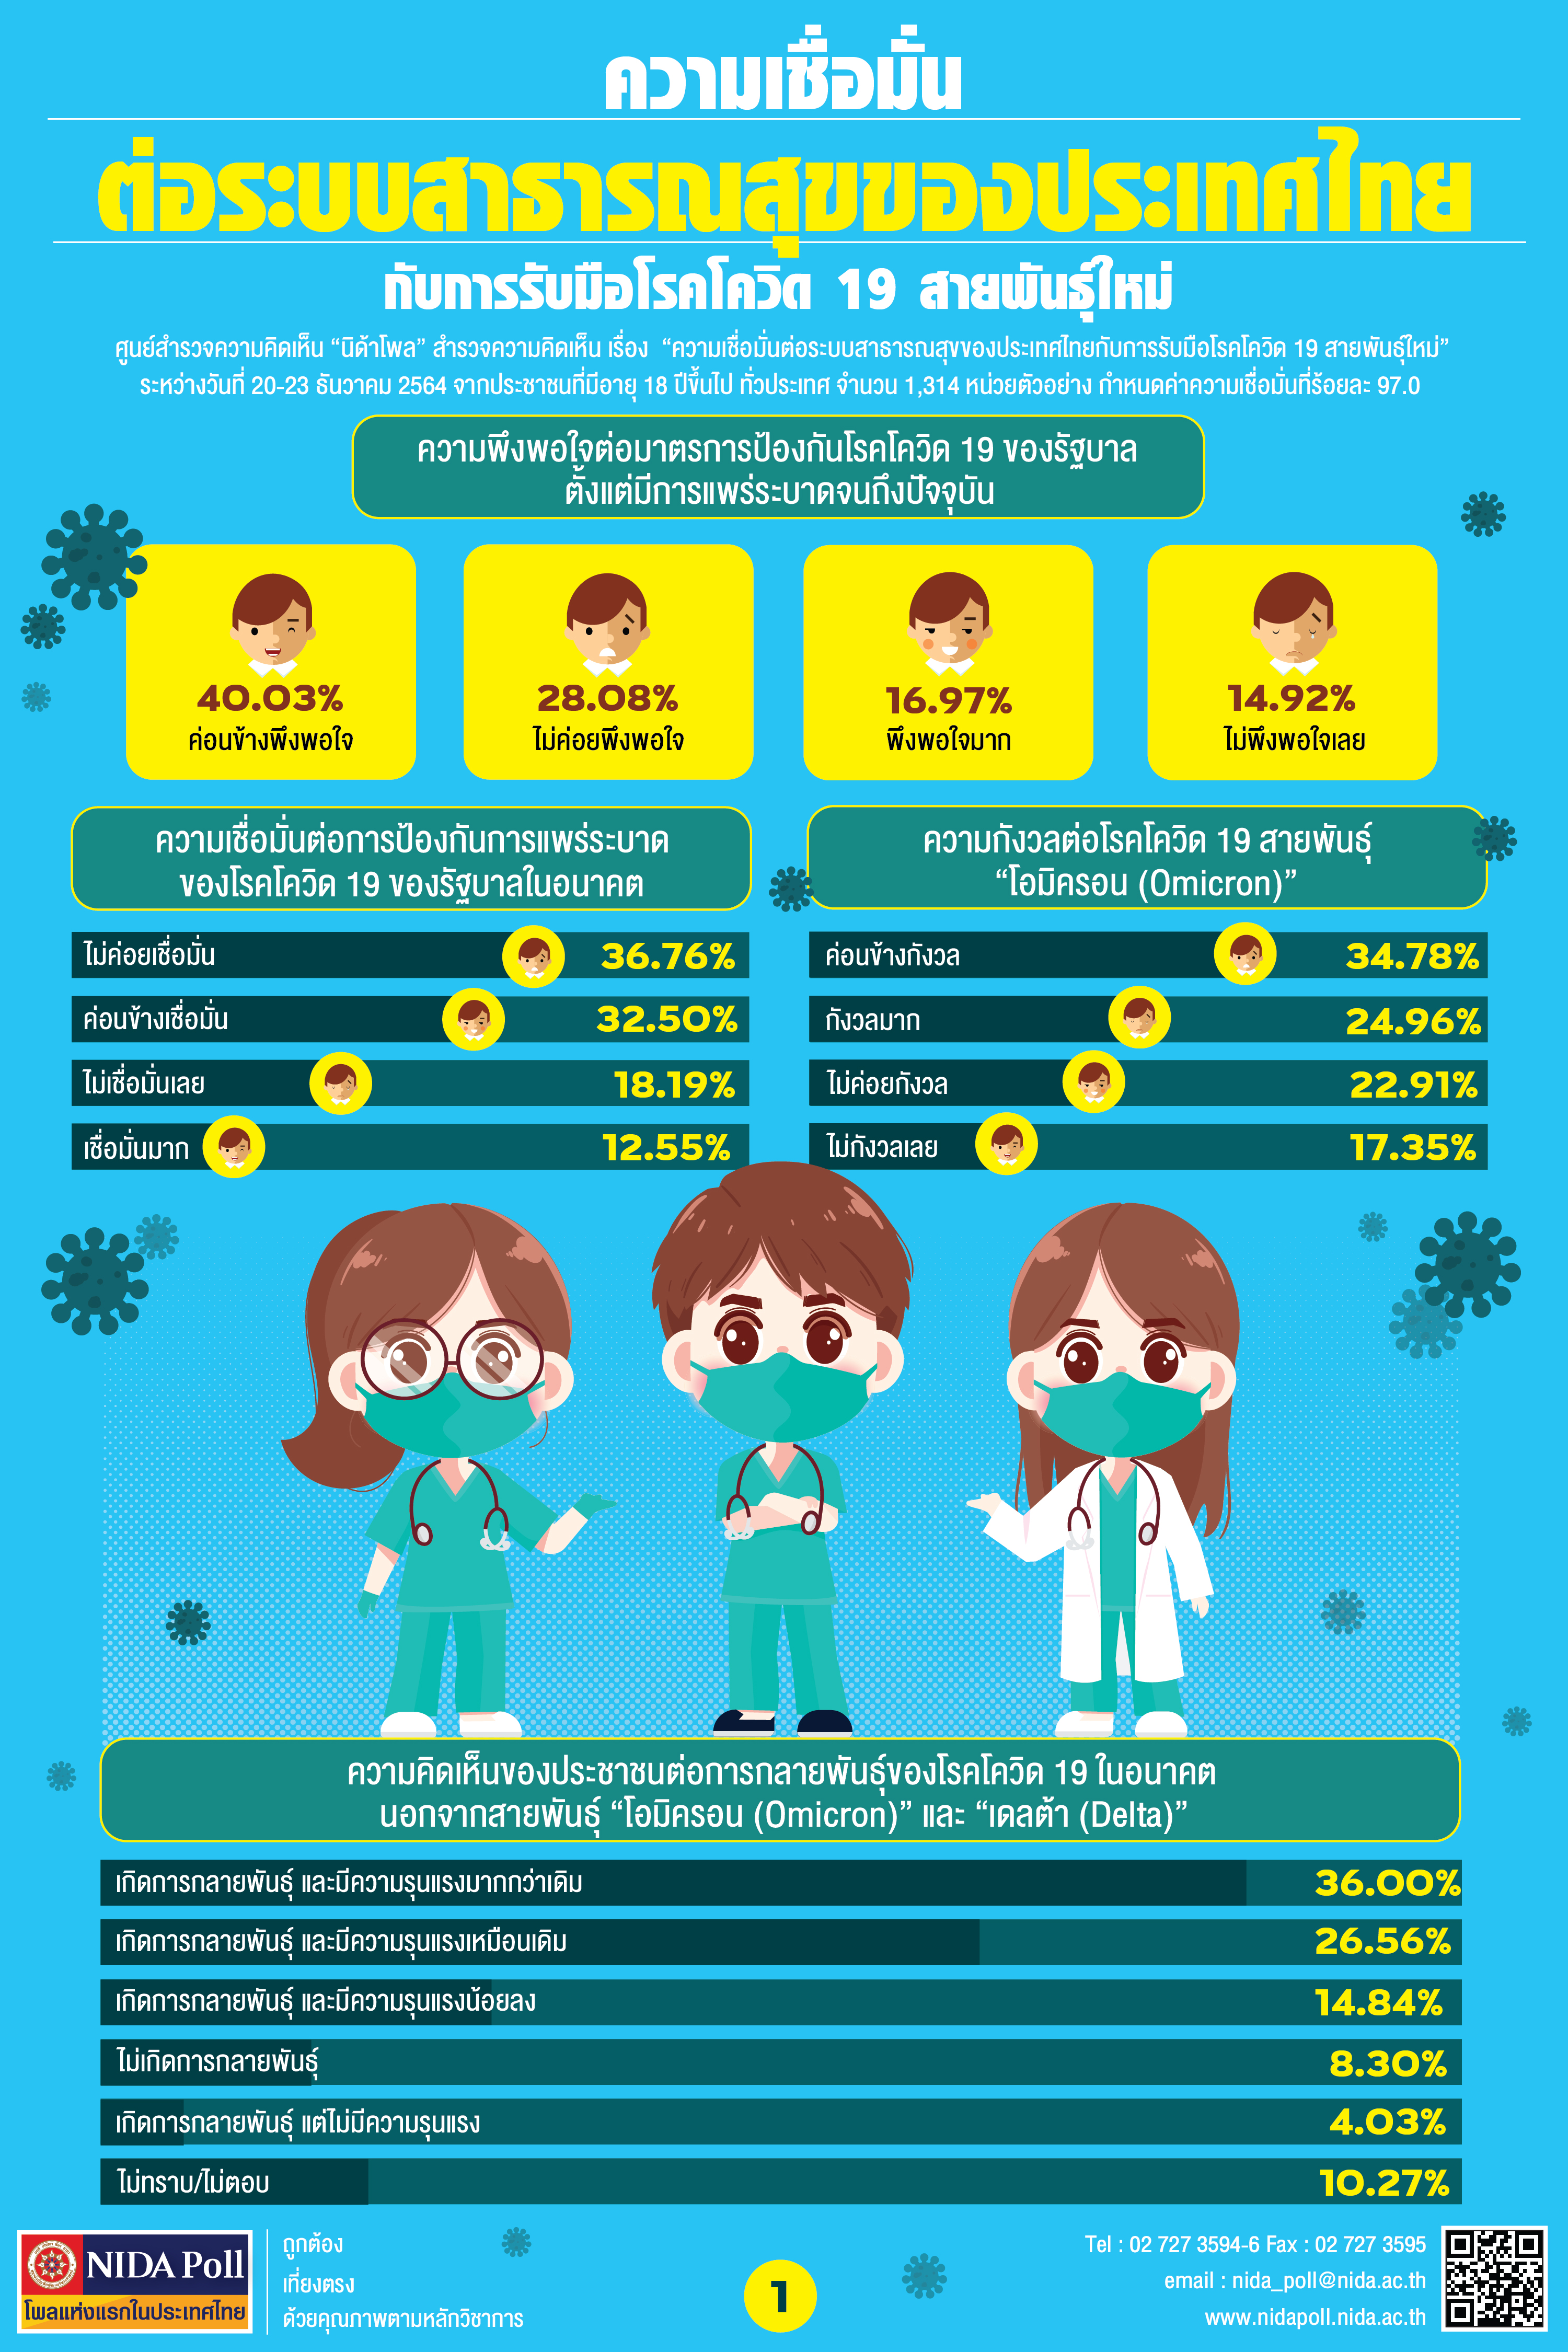 NIDA Poll ความเชื่อมั่นต่อระบบสาธารณสุขของประเทศไทยกับการรับมือโรคโควิด 19 สายพันธุ์ใหม่ 01